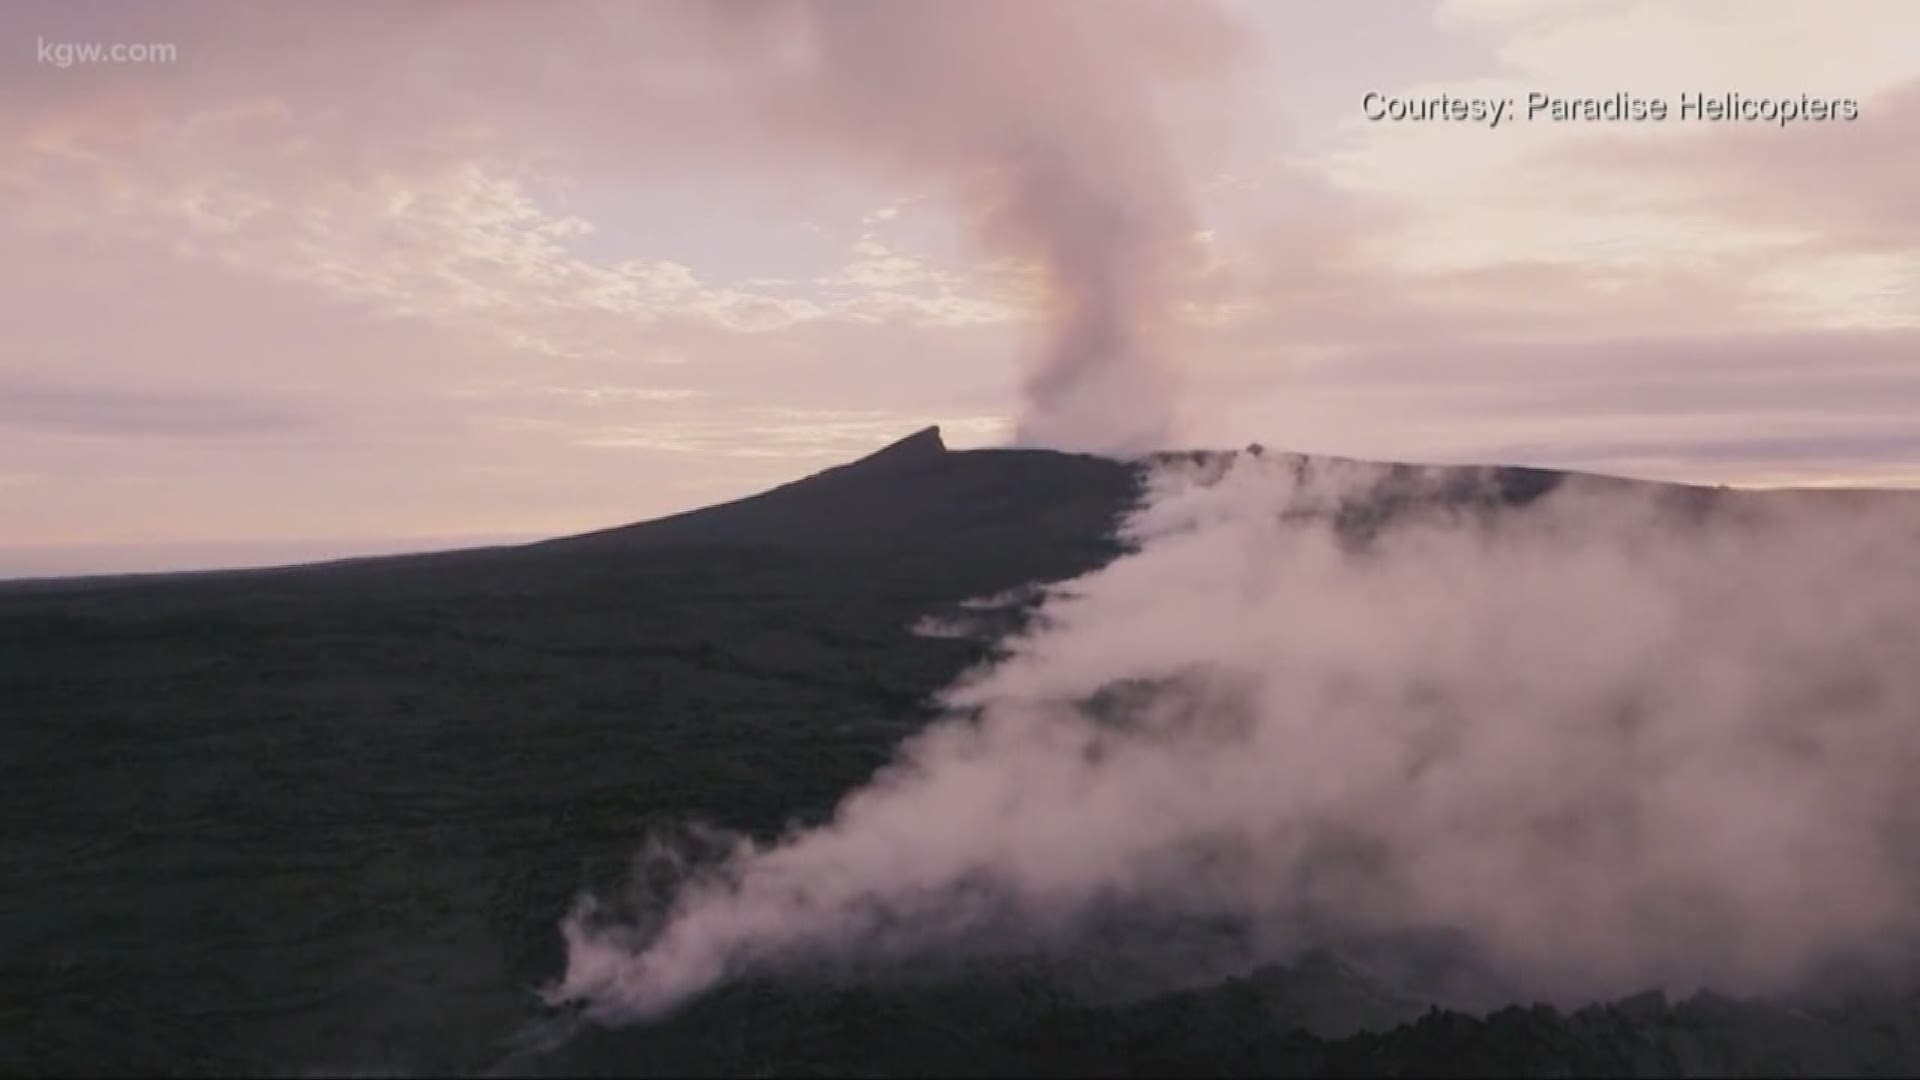 Hawaii's Kilauea volcano erupting